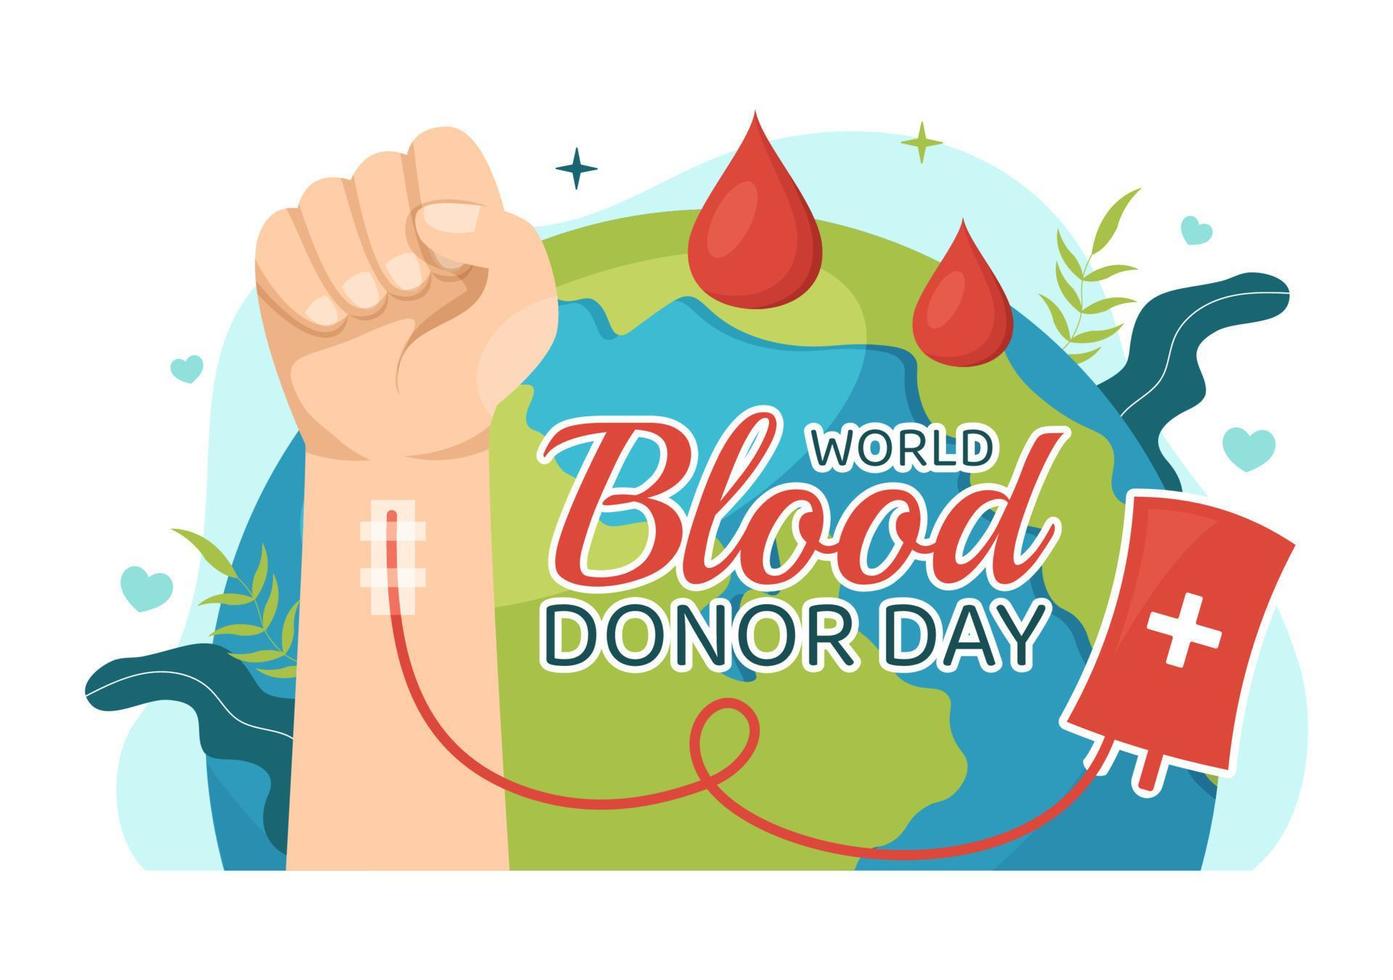 mondo sangue donatore giorno su giugno 14 illustrazione con umano donato bloods per dare il destinatario nel Salva vita piatto cartone animato mano disegnato modelli vettore